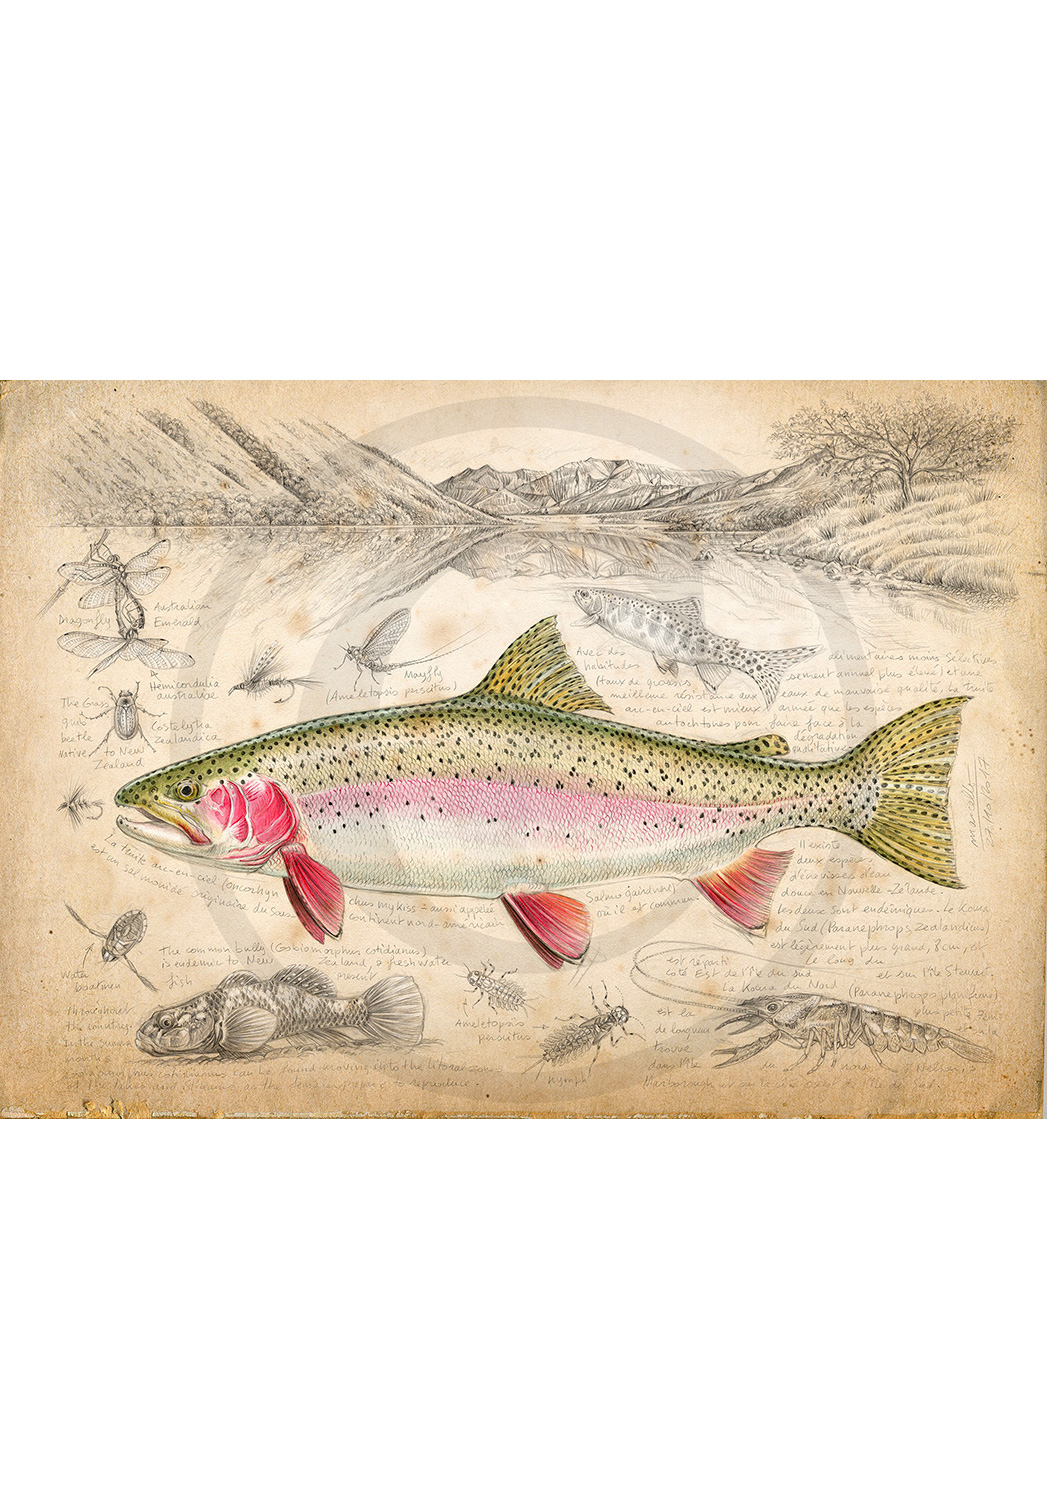 Marcello-art: Aquatic fauna 373 - New Zealand rainbow trout